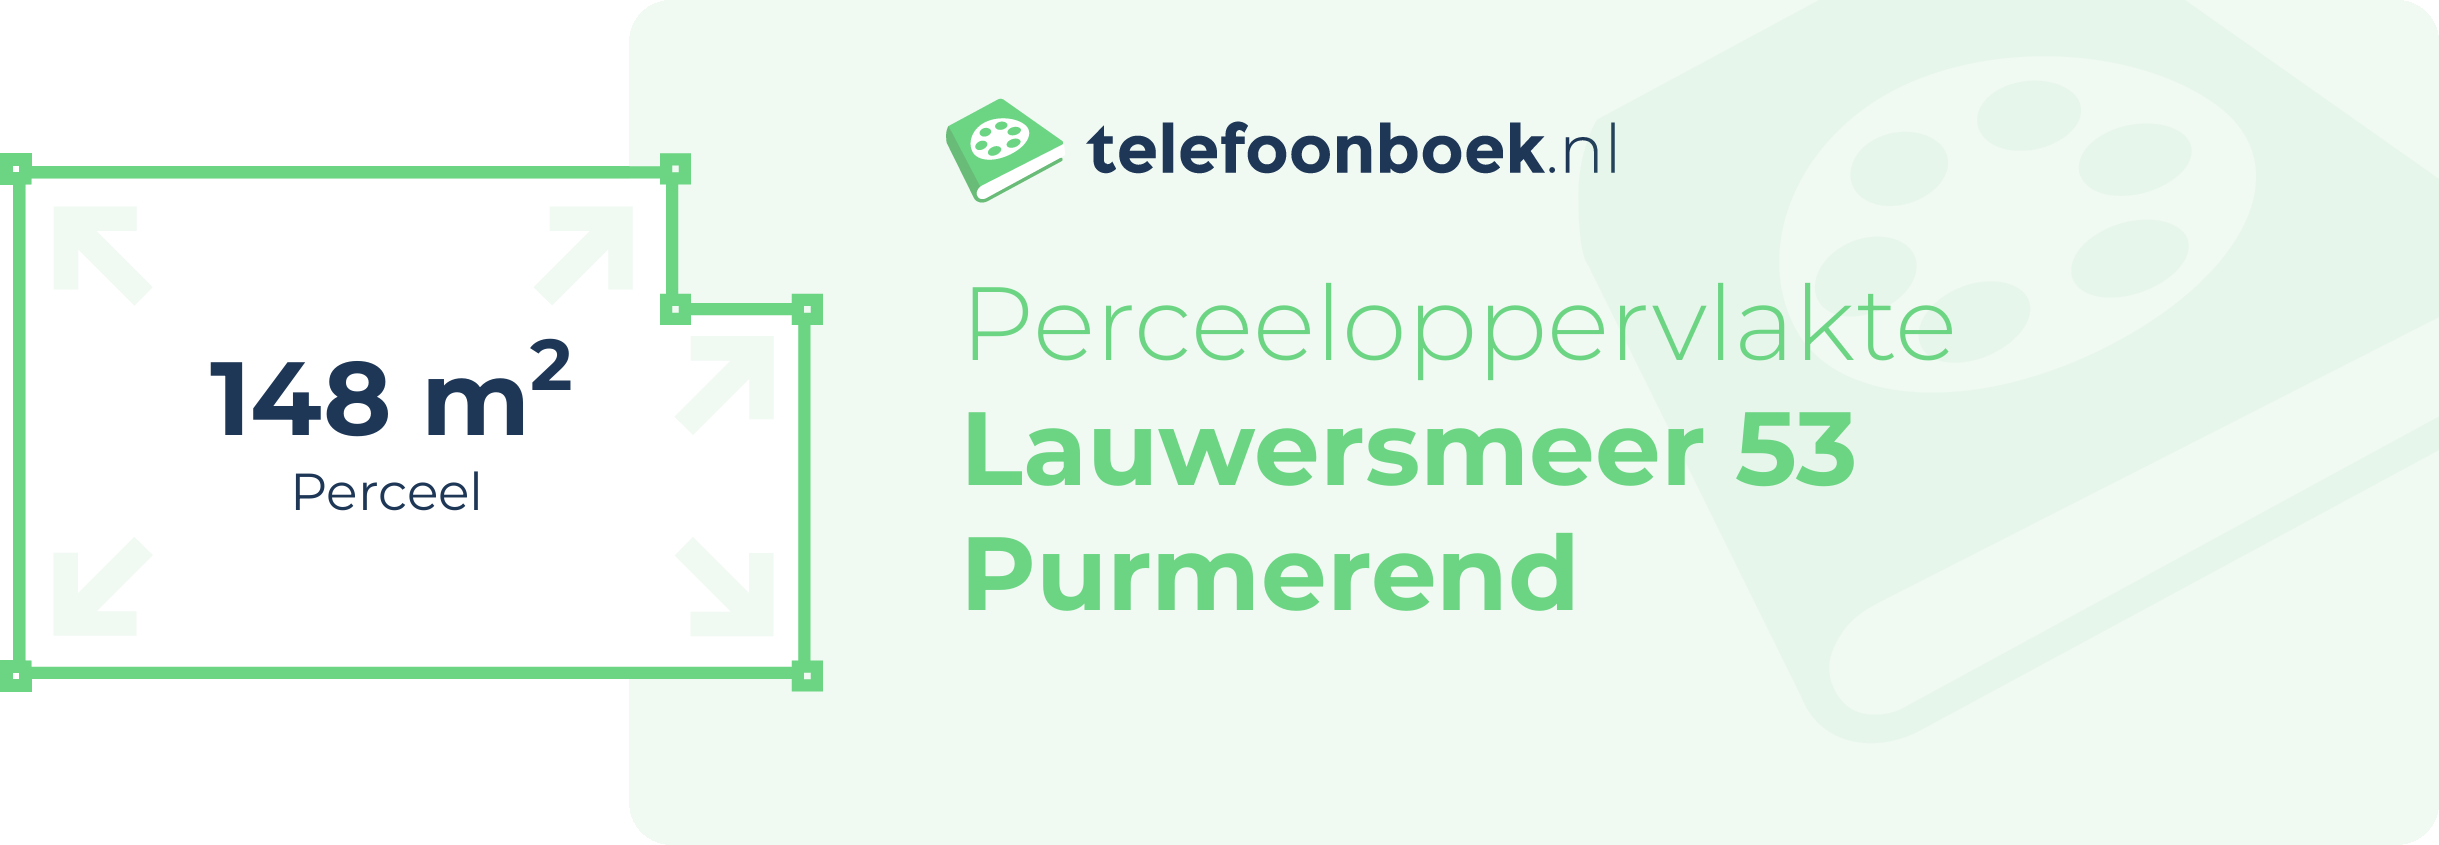 Perceeloppervlakte Lauwersmeer 53 Purmerend